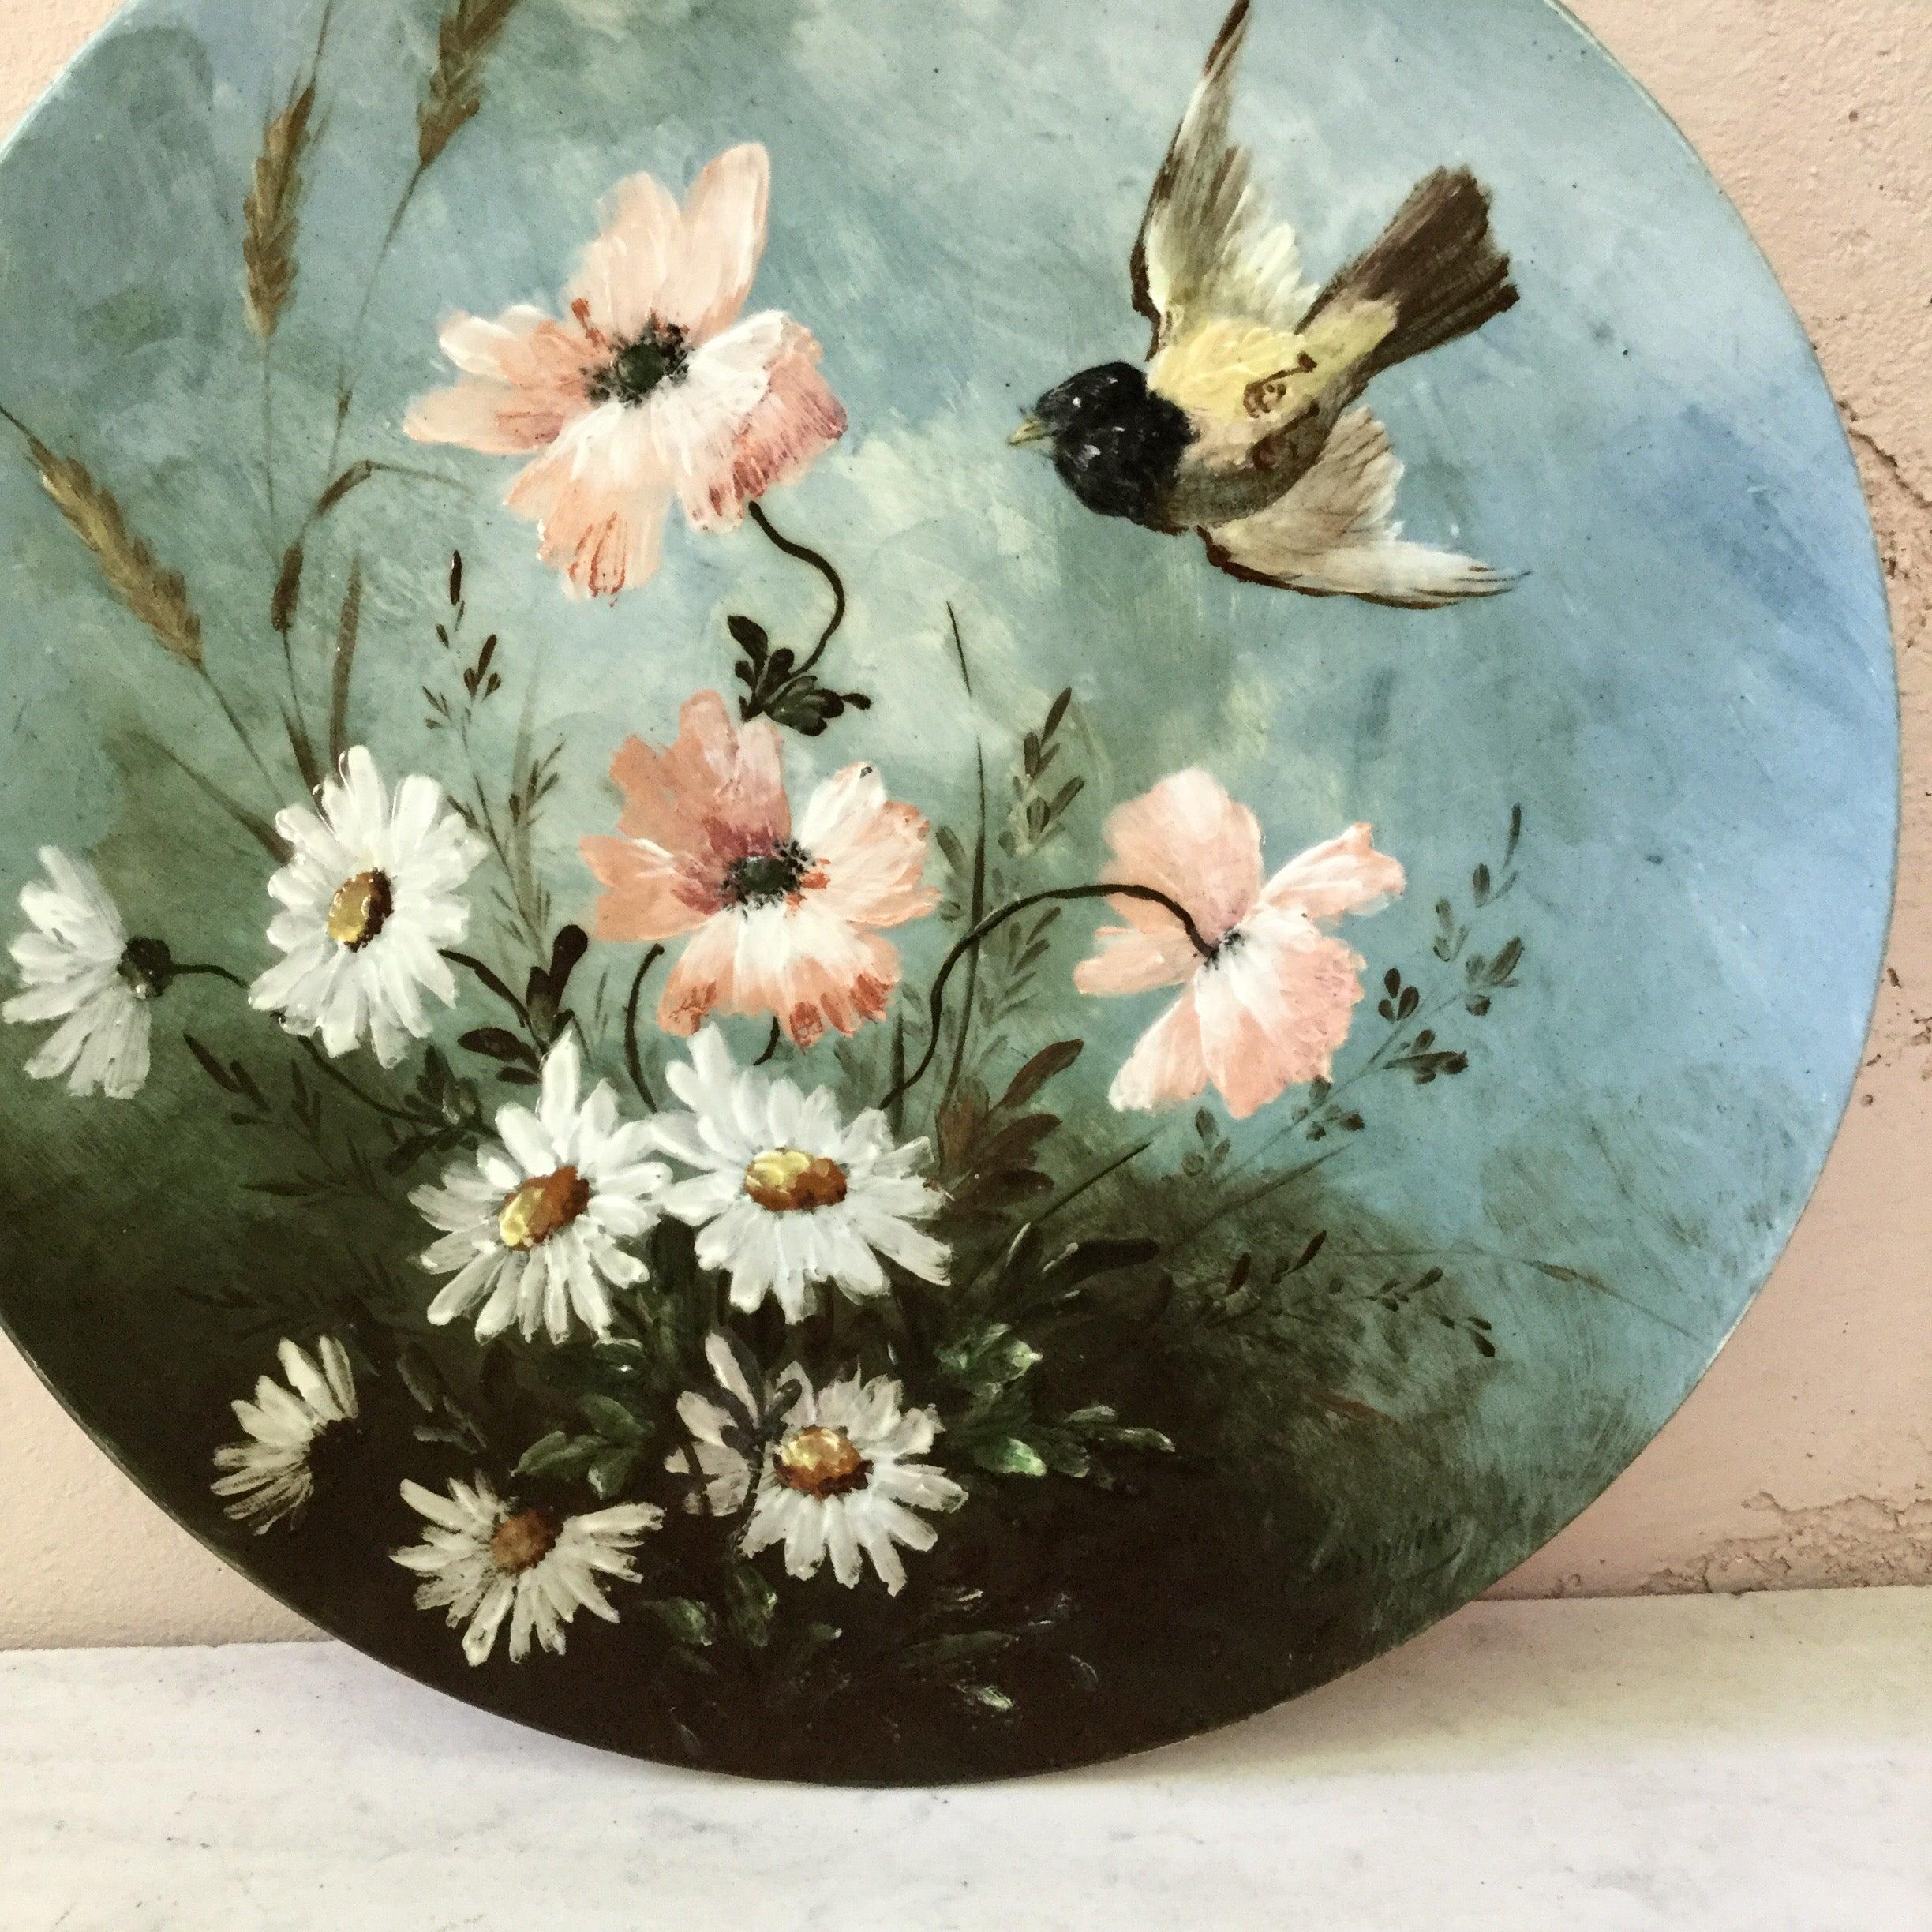 Charmante 19. Jahrhundert Französisch Majolika gemalt Platte Vogel und weißen Gänseblümchen und Mohnblumen unterzeichnet Longwy.
Zeit des Impressionismus.